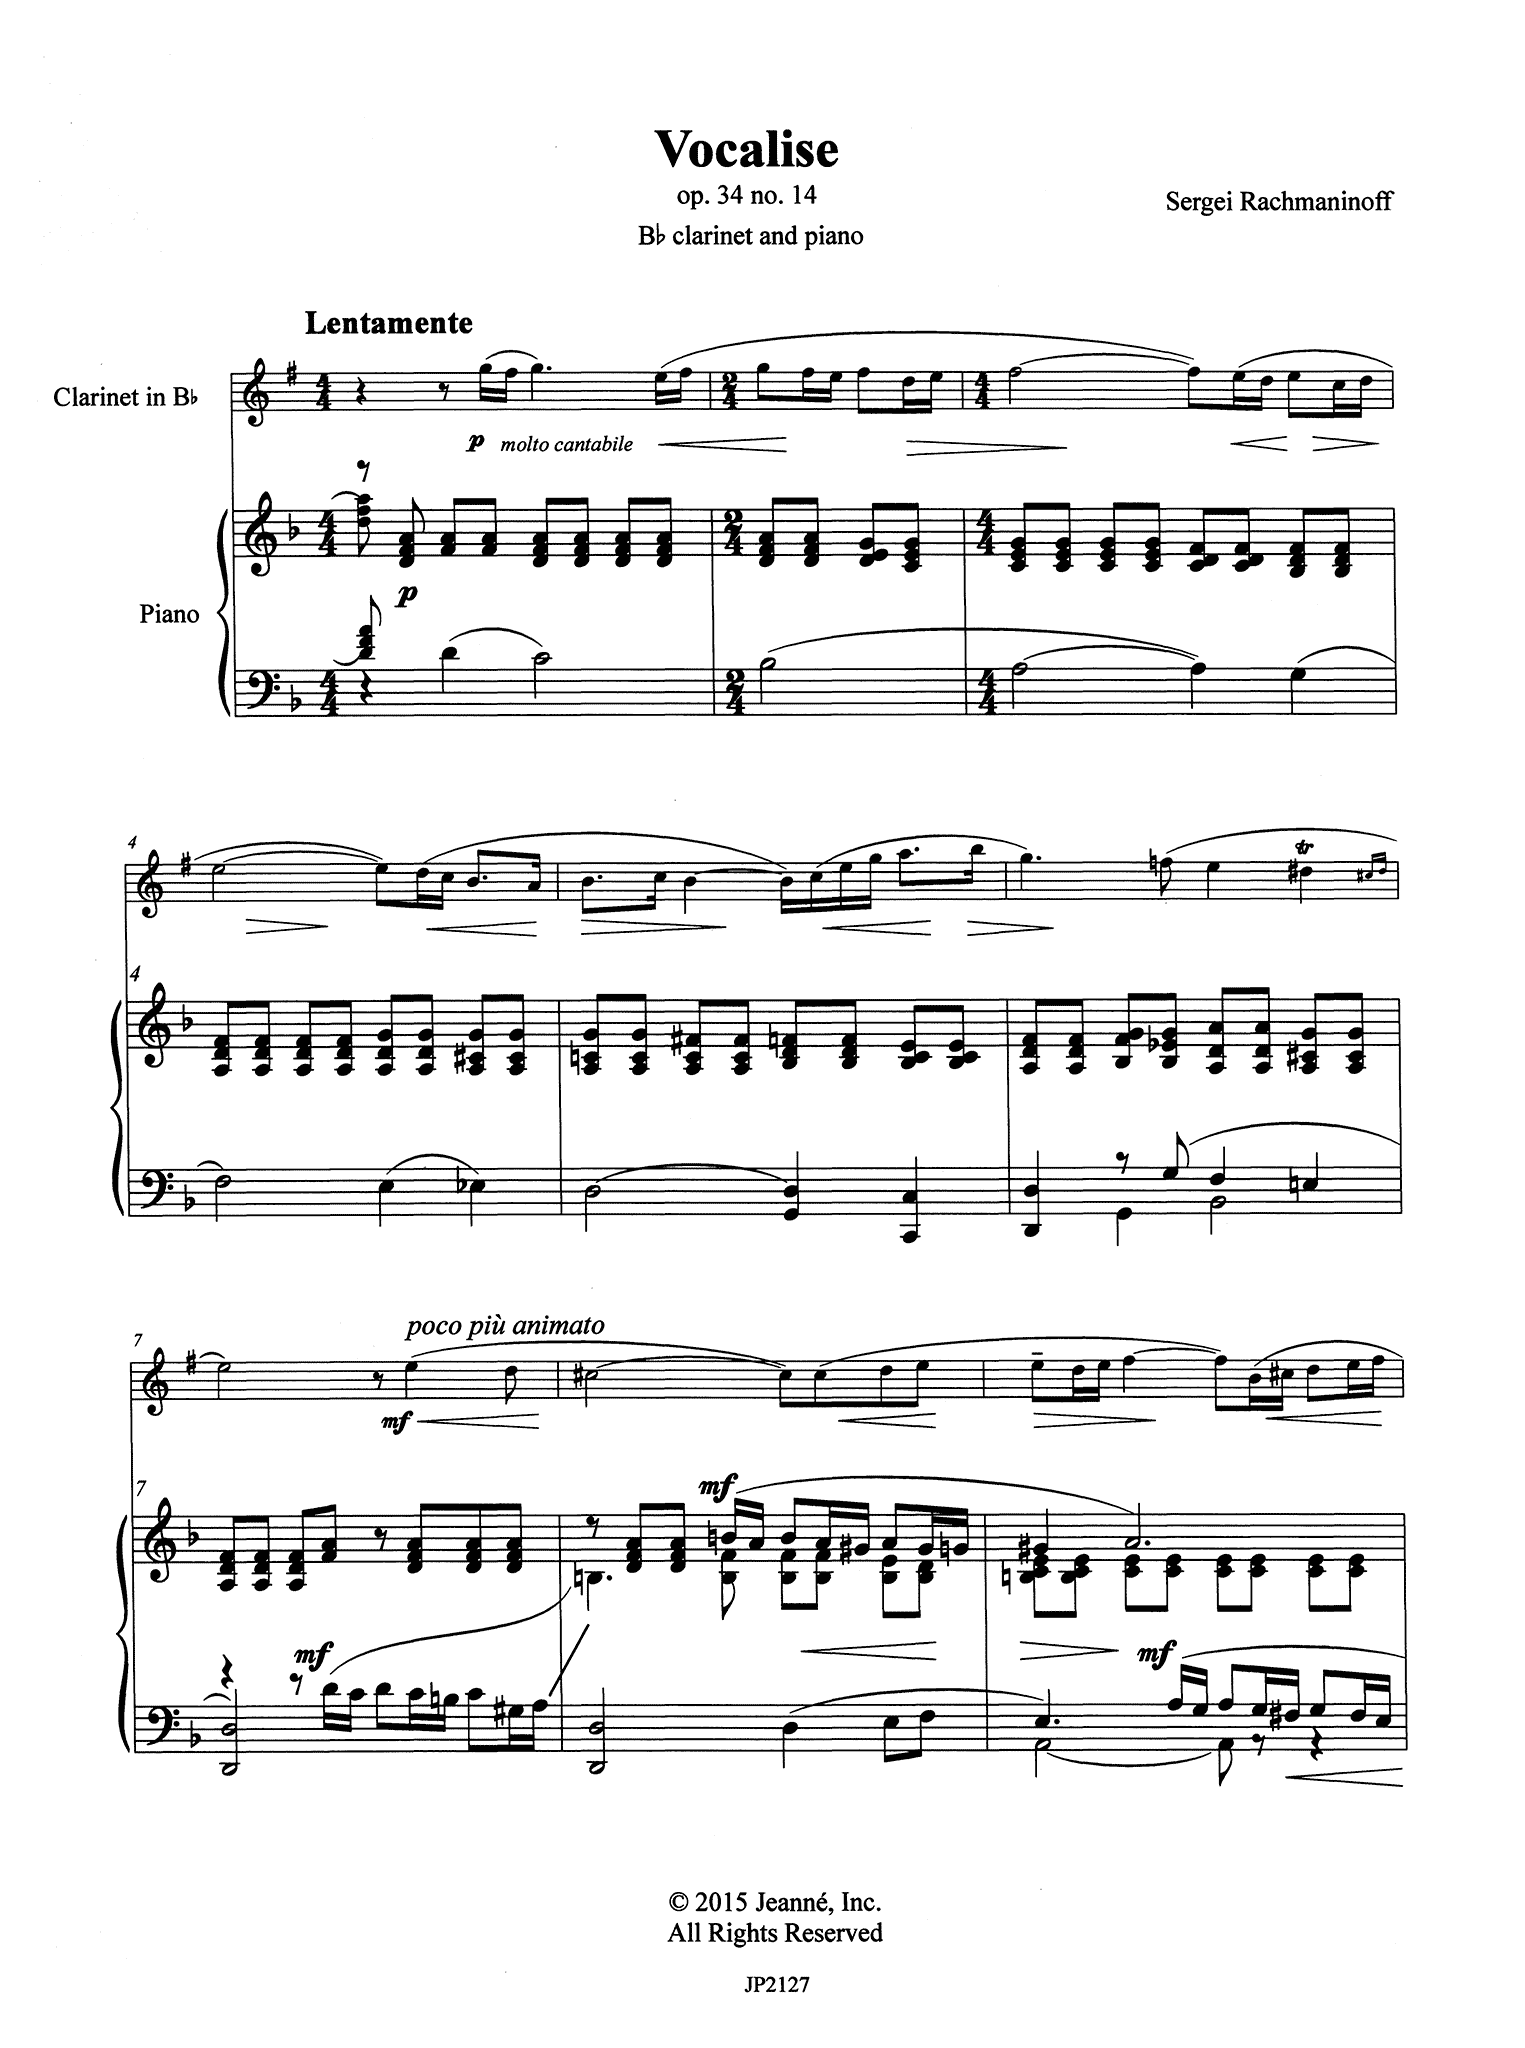 Rachmaninoff Vocalise Op. 34 No. 14 Score